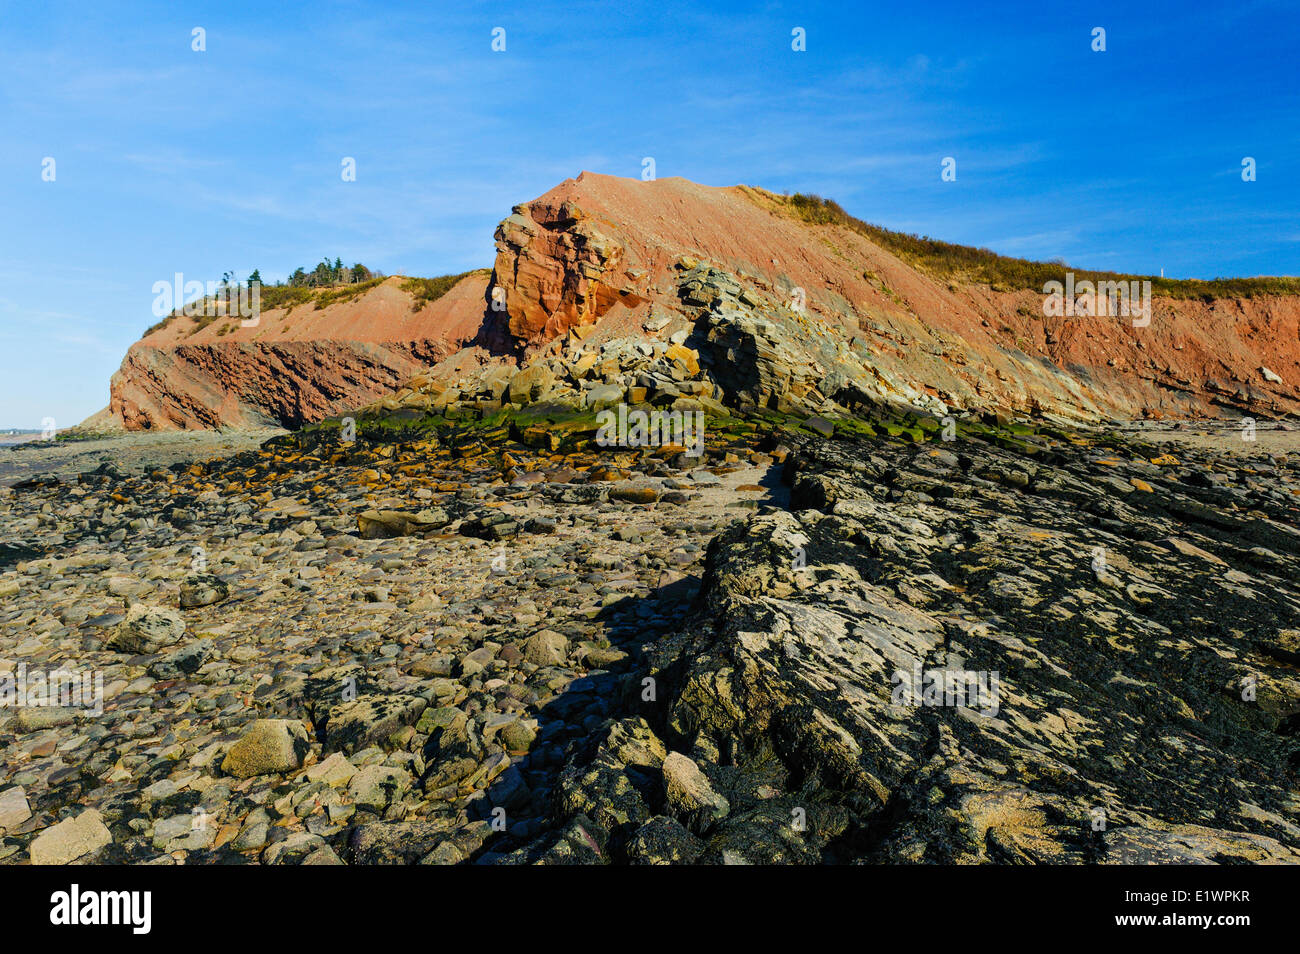 Falesie fossilifere di Joggins dove Bay Fundy maree esporre fossili carbone età carbonifero di foreste risalenti a 300 milioni di anni fa. Foto Stock